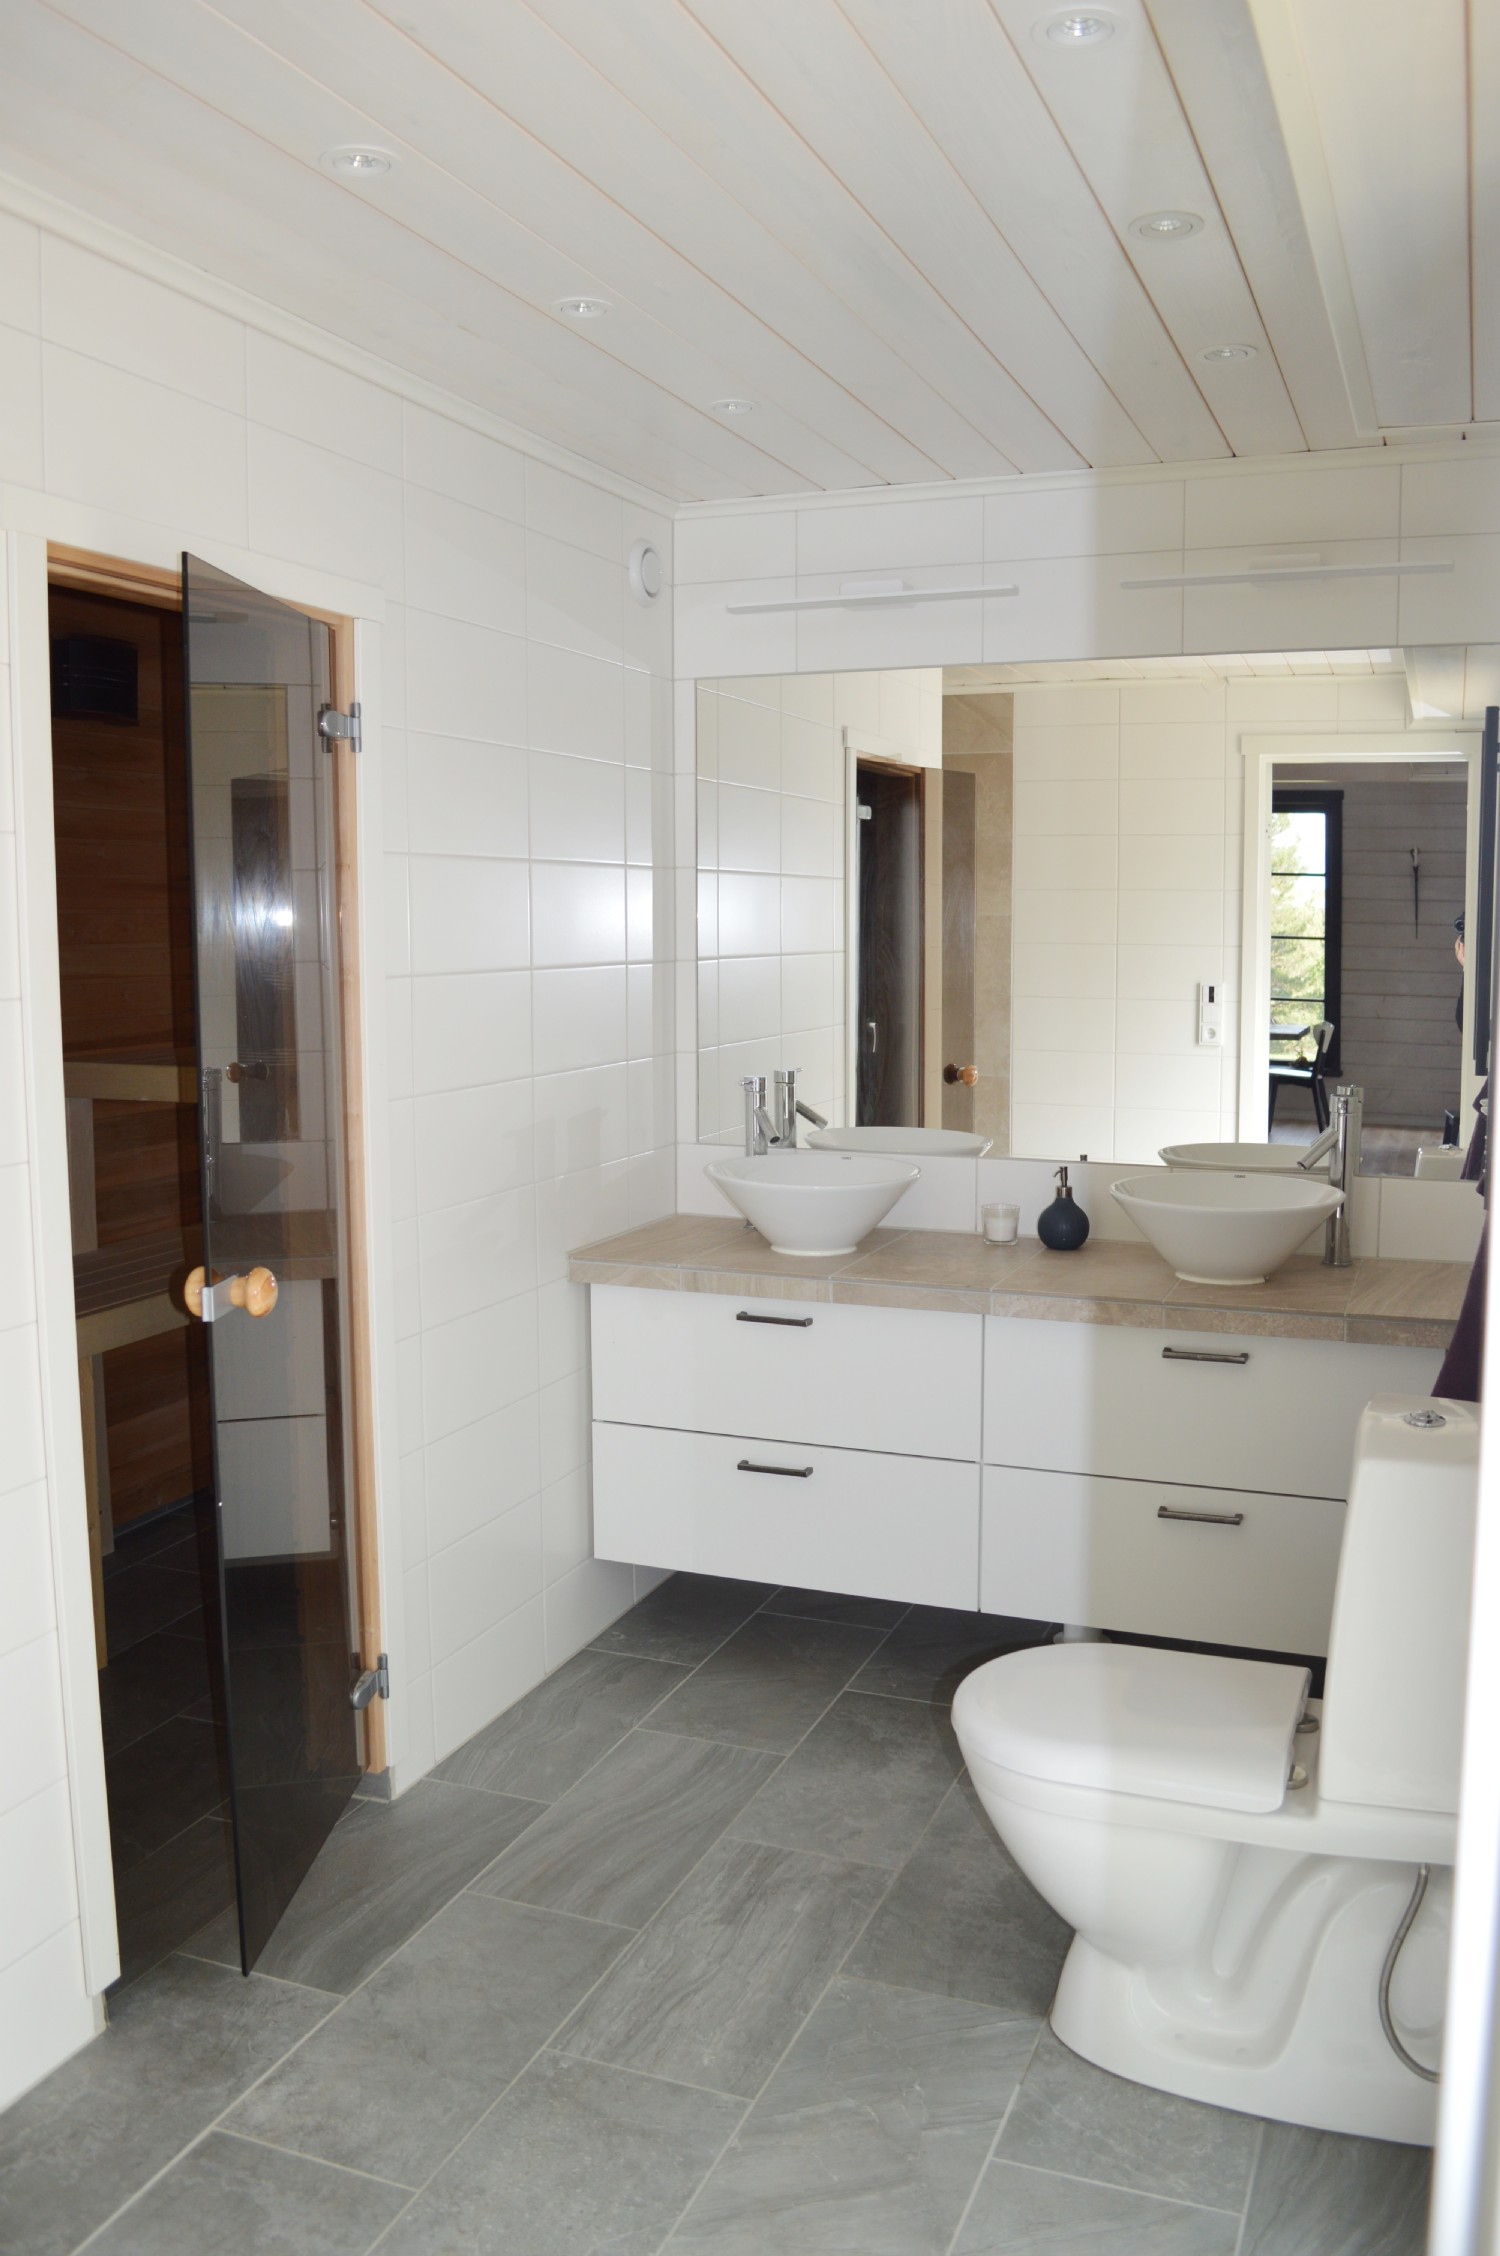 Badrum 2 nedervåning / Bathroom 2 entrence floor 